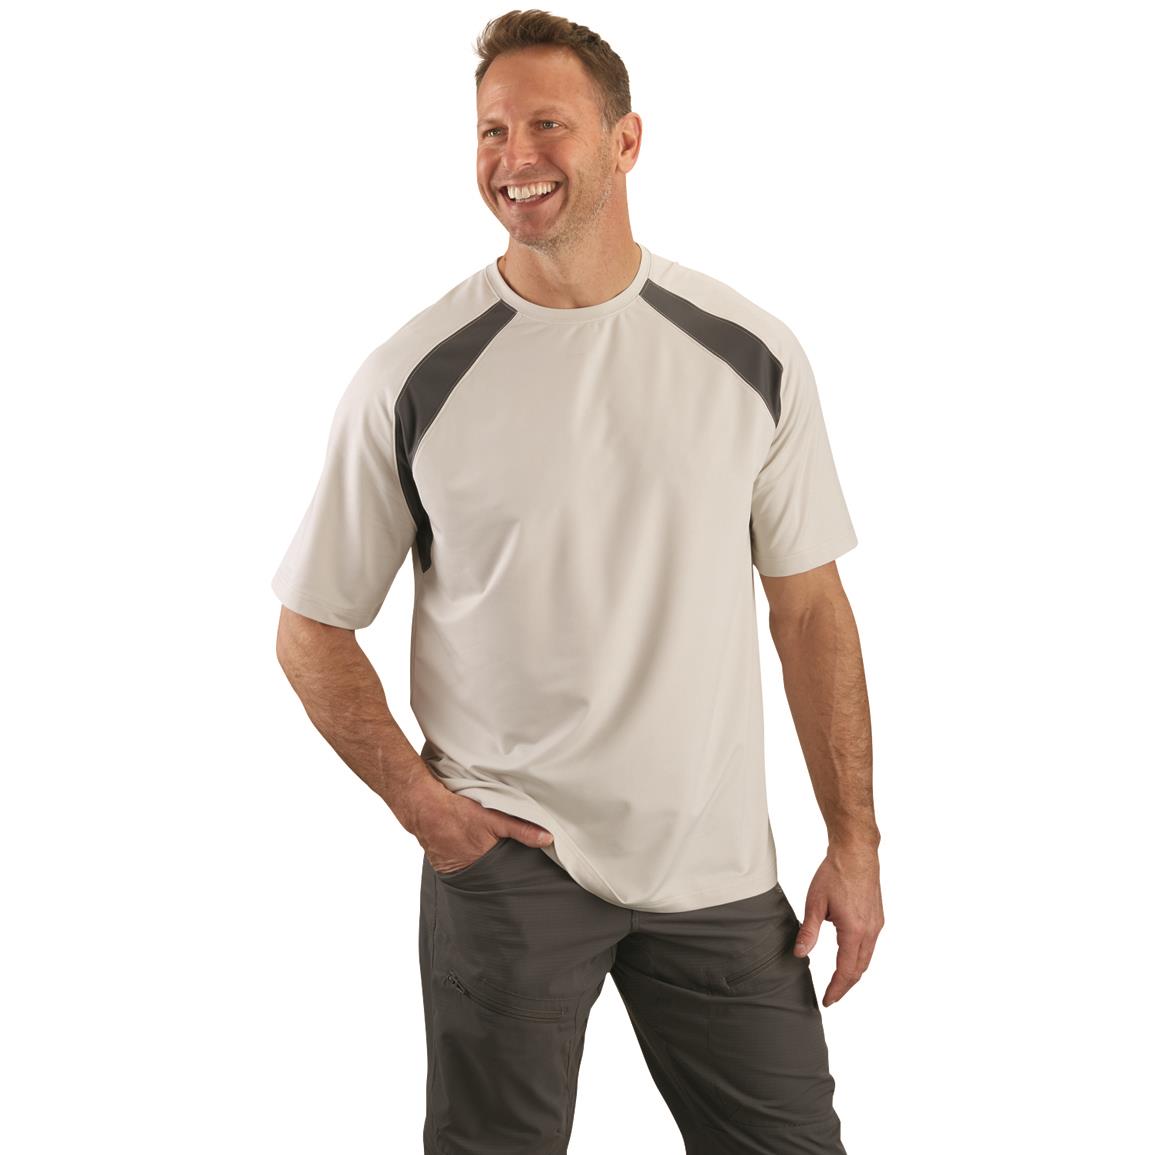 Guide Gear Men's Performance Cooling Short Sleeve Shirt, Light Gray